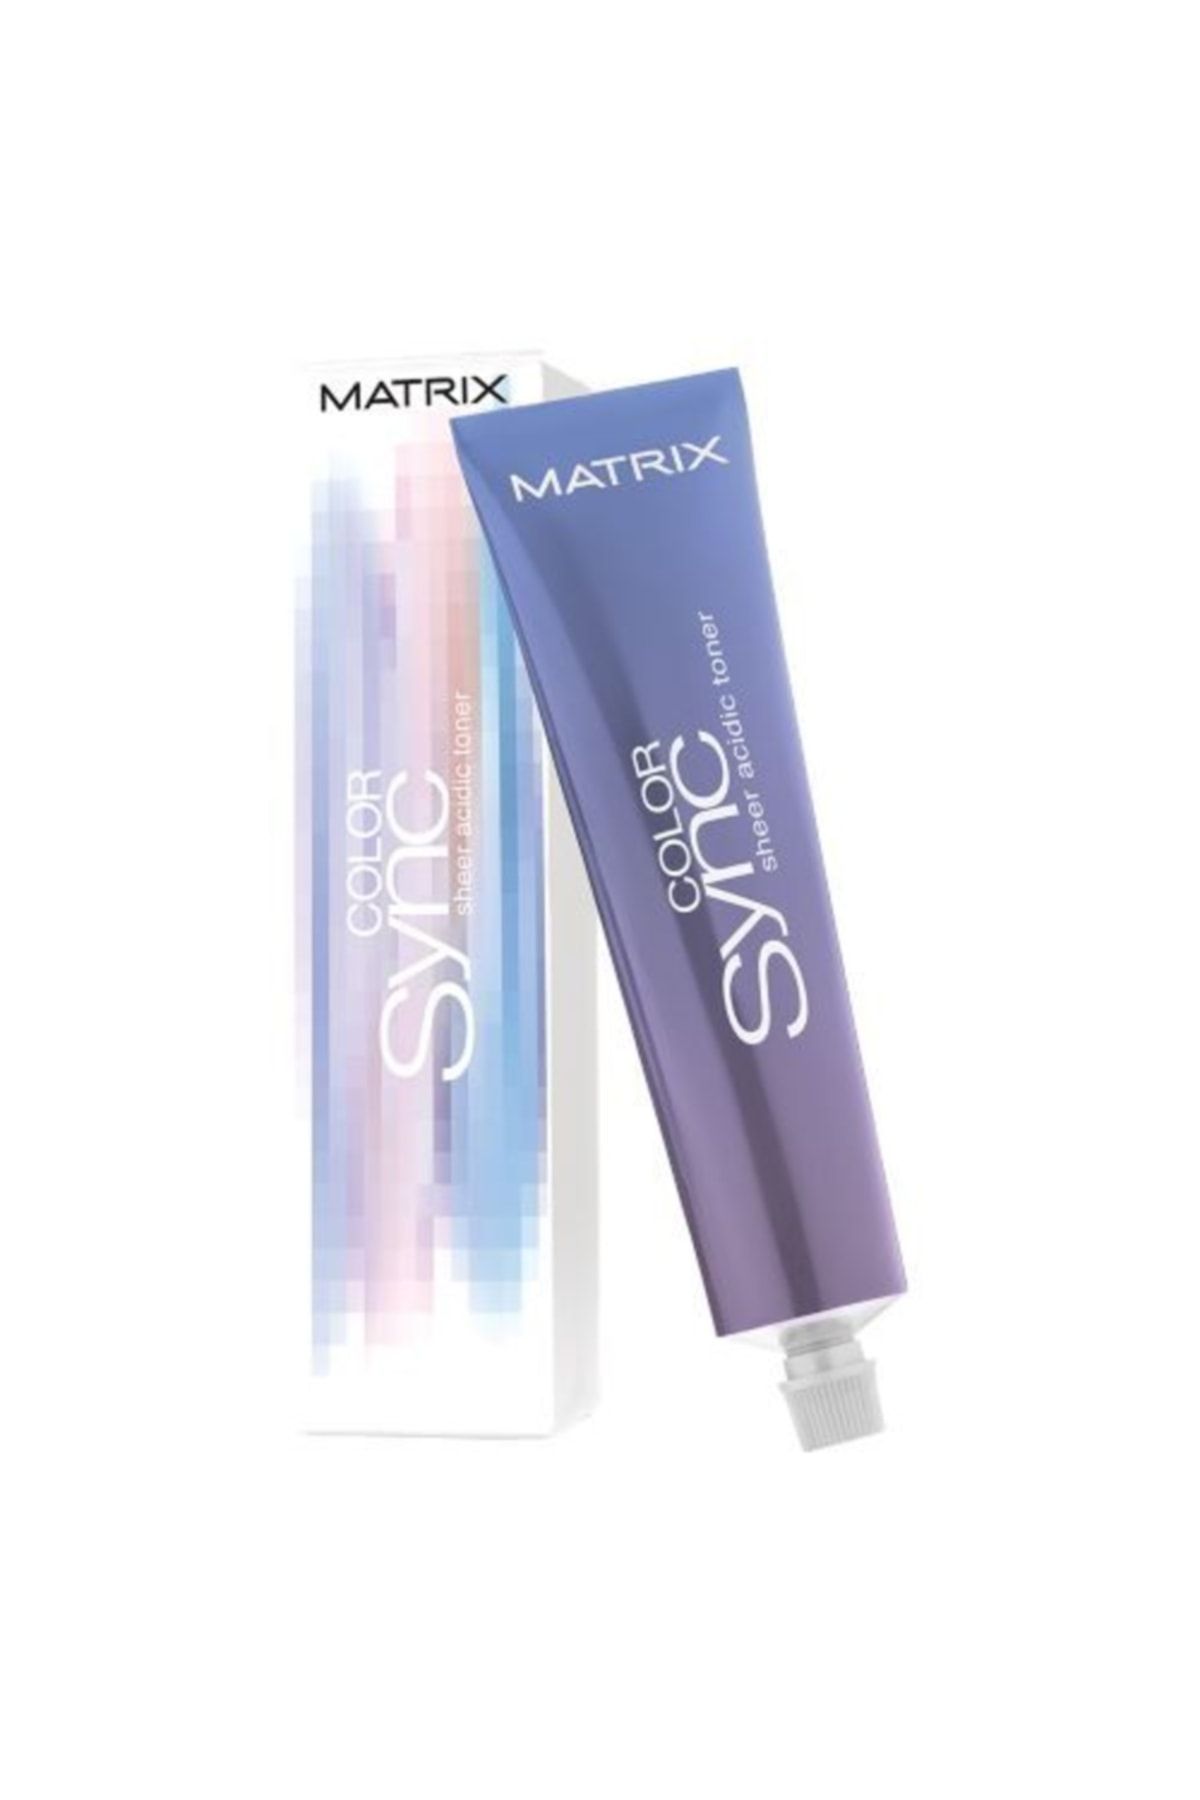 Matrix Color Sync Sheer Acidic Toner Brunette Saça Parlaklık Kazandıran Yarı Kalıcı Renklendirme 90ml